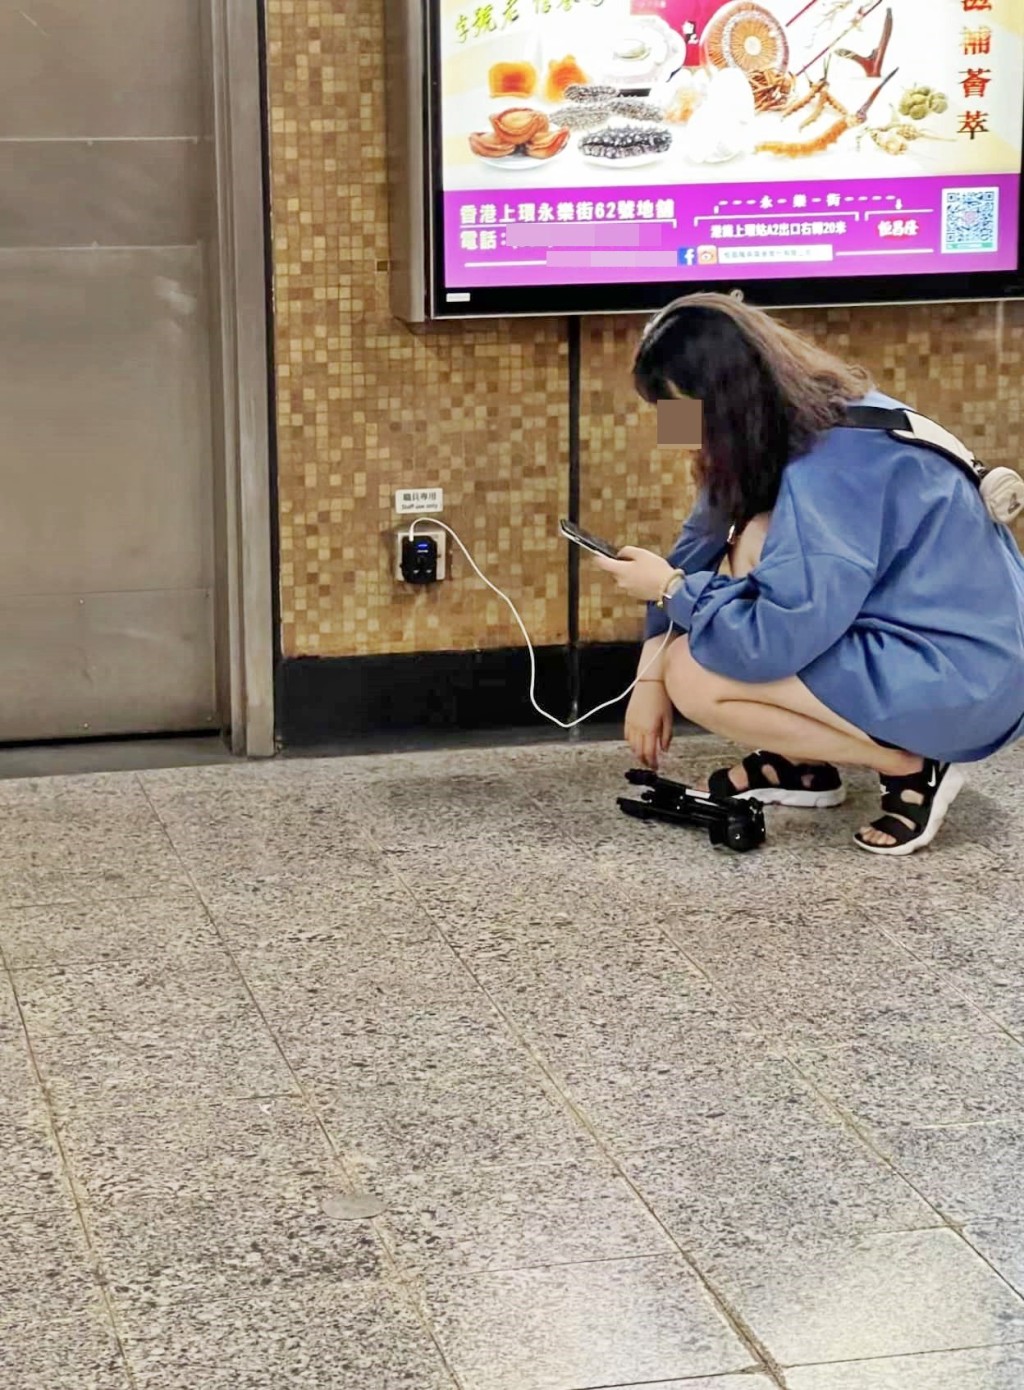 女子在叉電期間，蹲在地上全神貫注滑手機，並將隨身攜帶的腳架放於地上。網圖